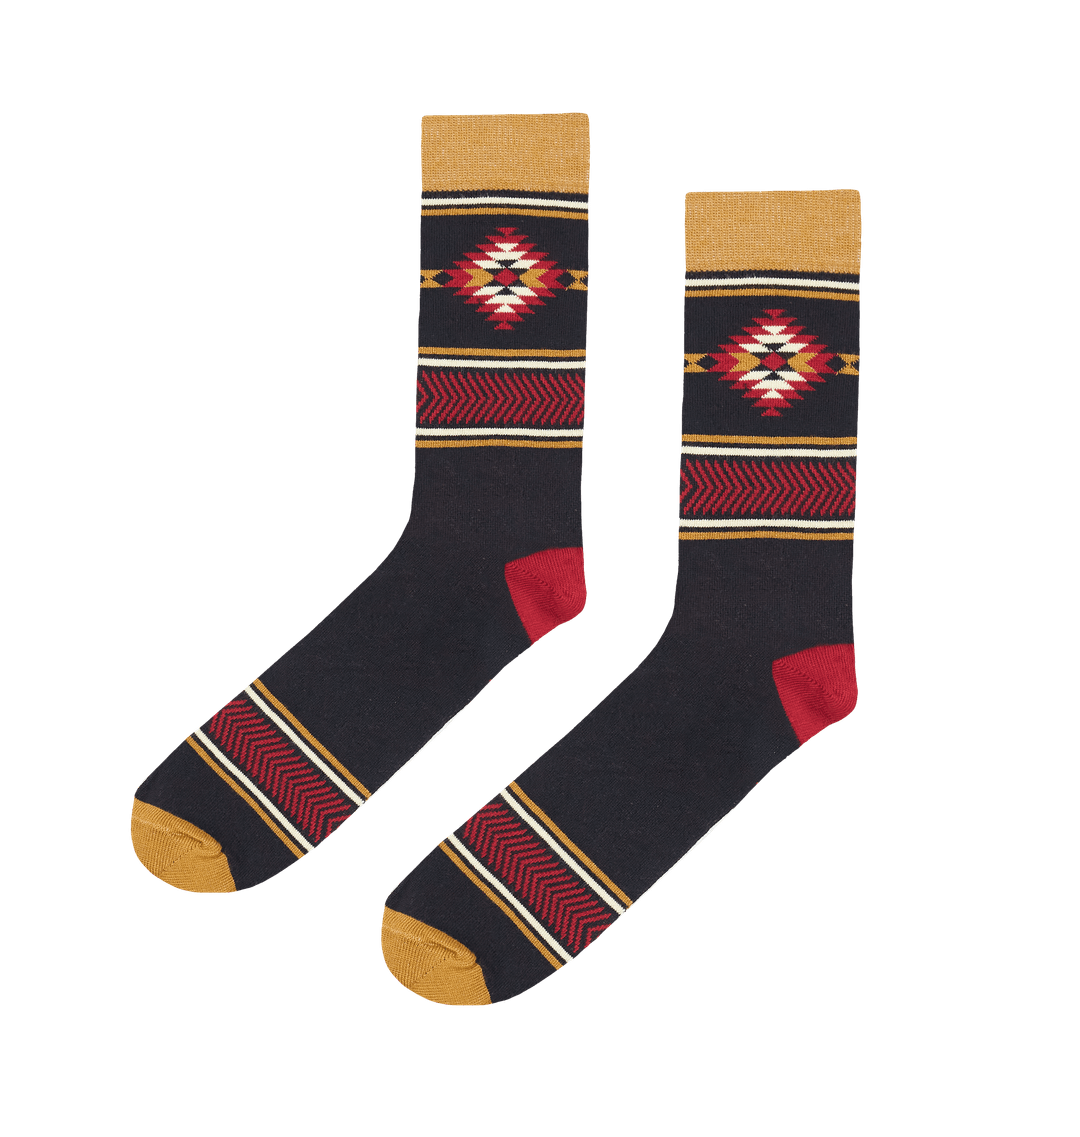 Norway Men's Bamboo Socks Pair